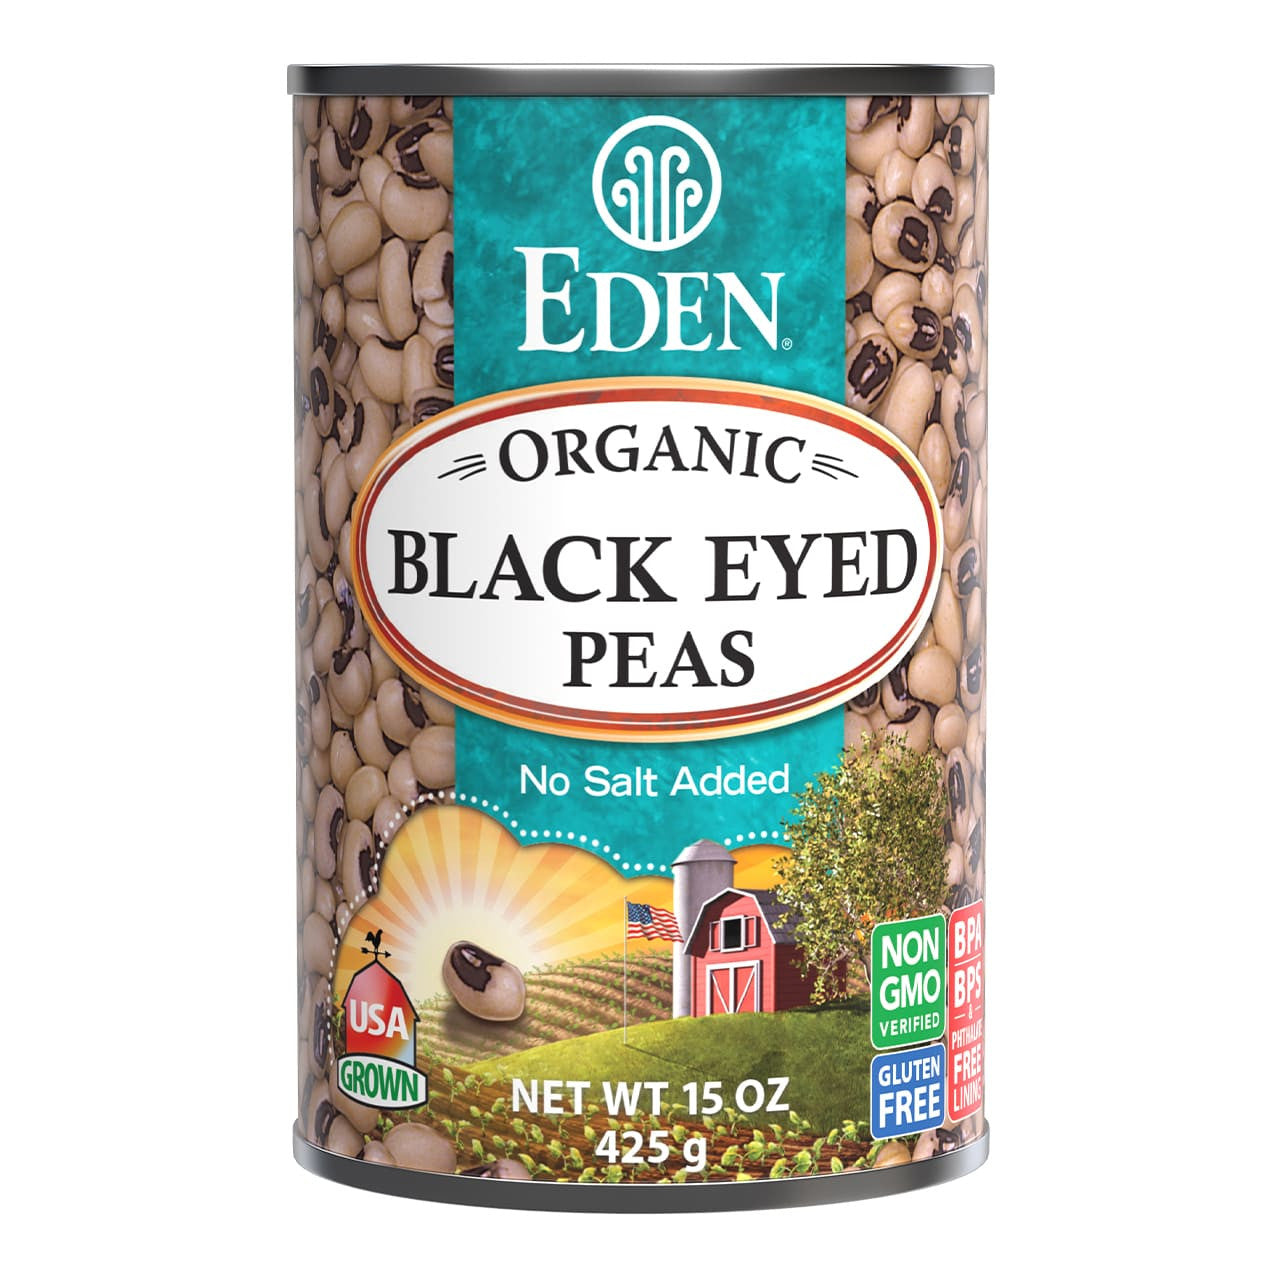 Canned, Black Eyed Peas (398 mL)